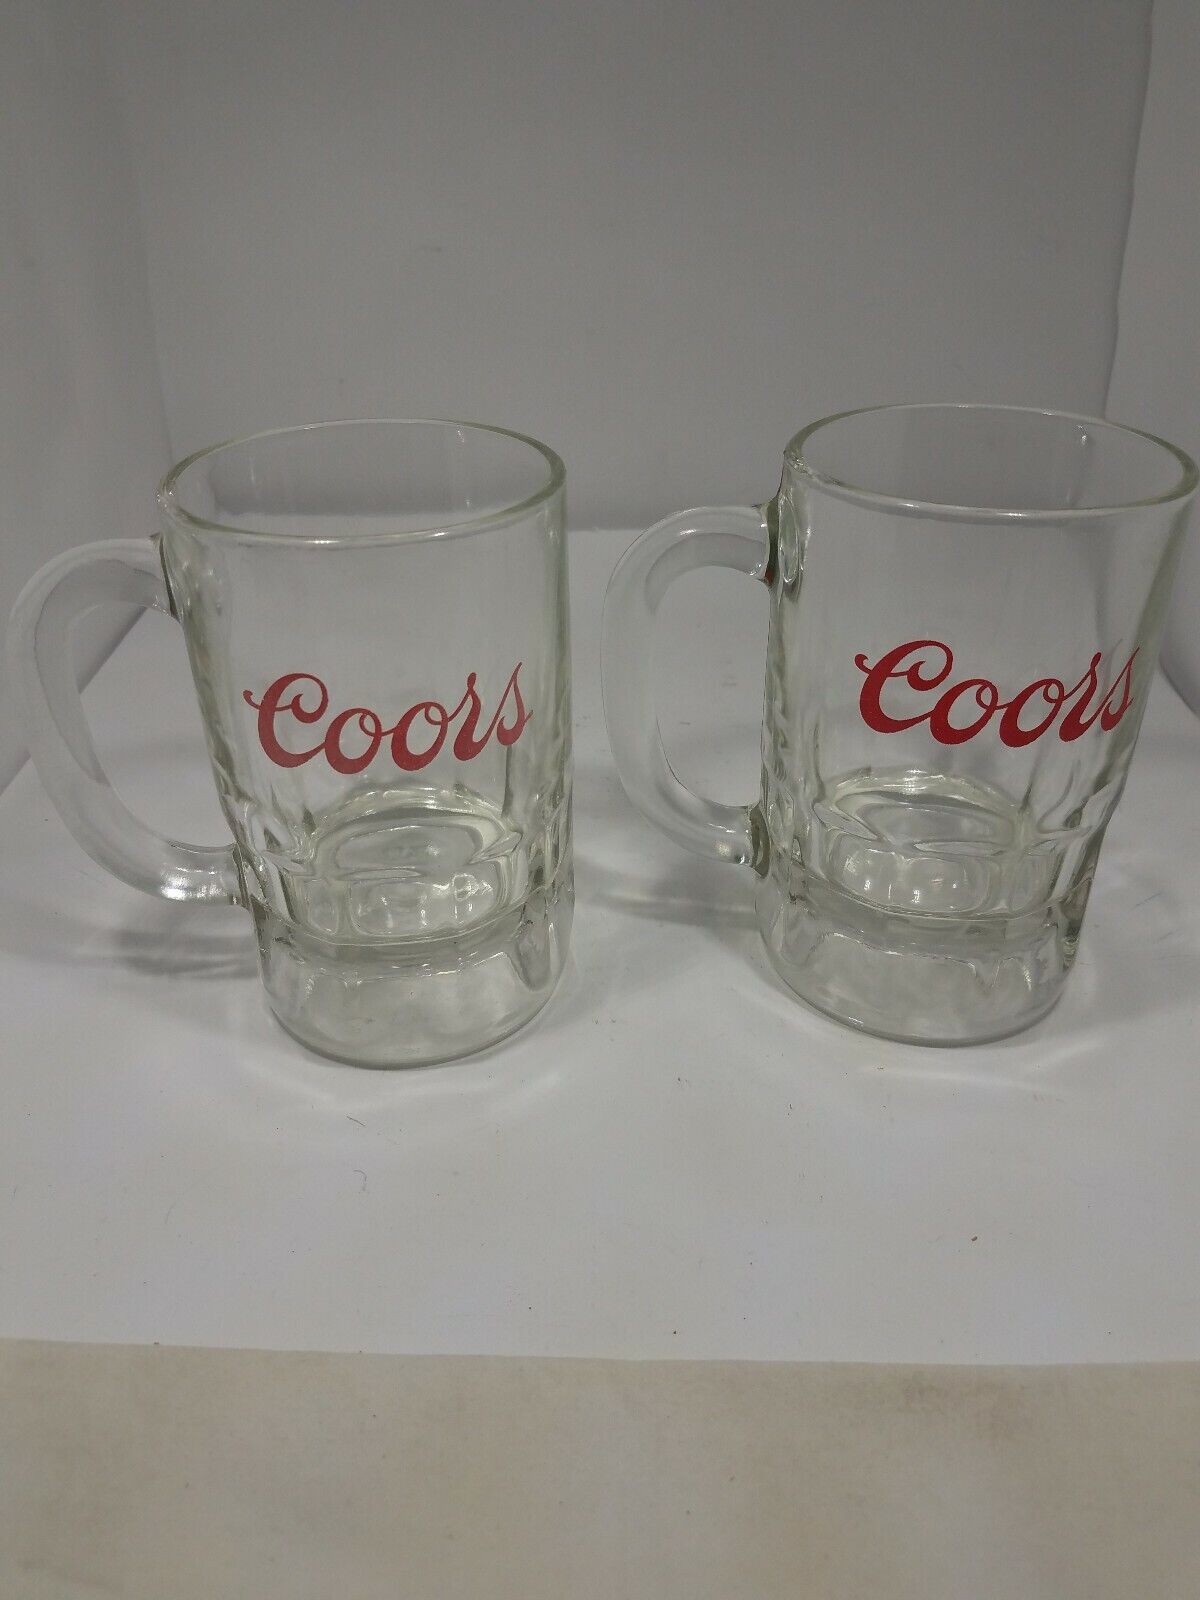 Coors Glass Beer Stein Vintage 1970 - Set of 2 Very Nice